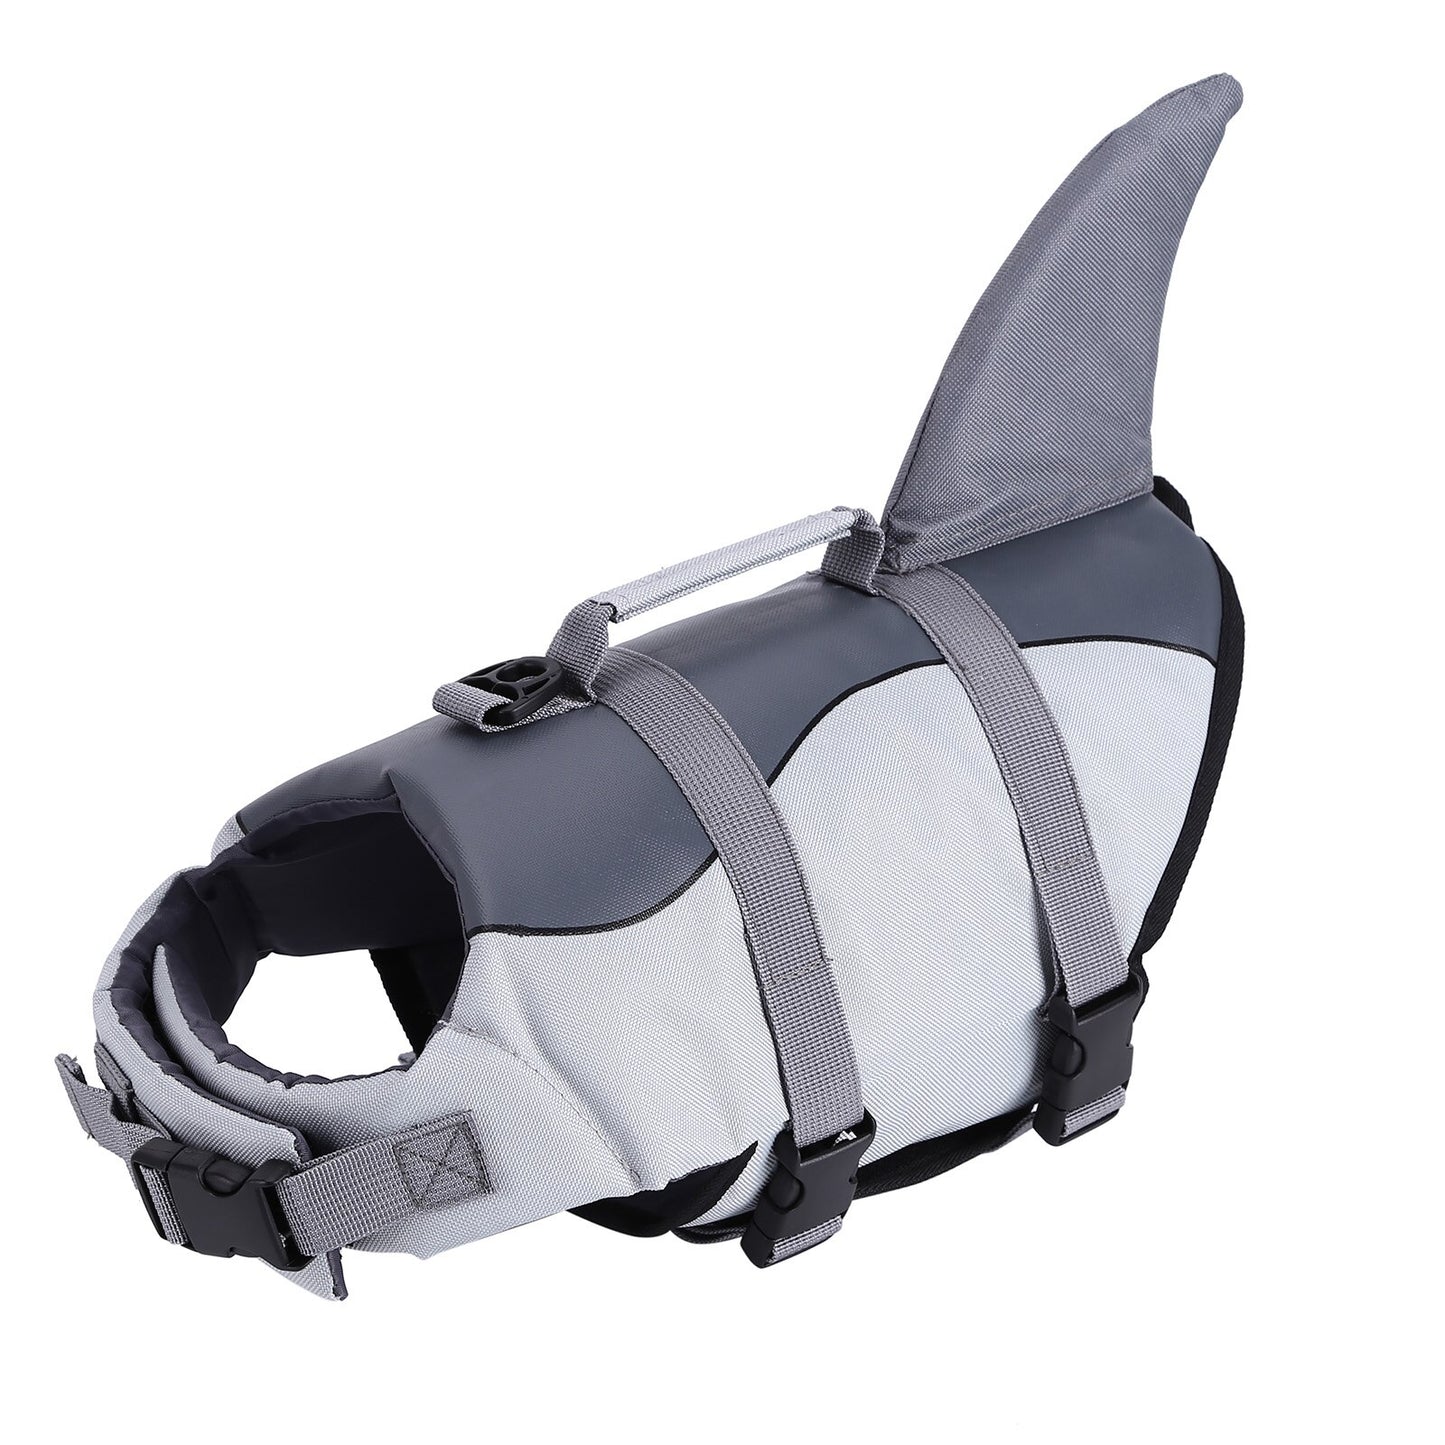 Adjustable Shark Life Jacket for Dog